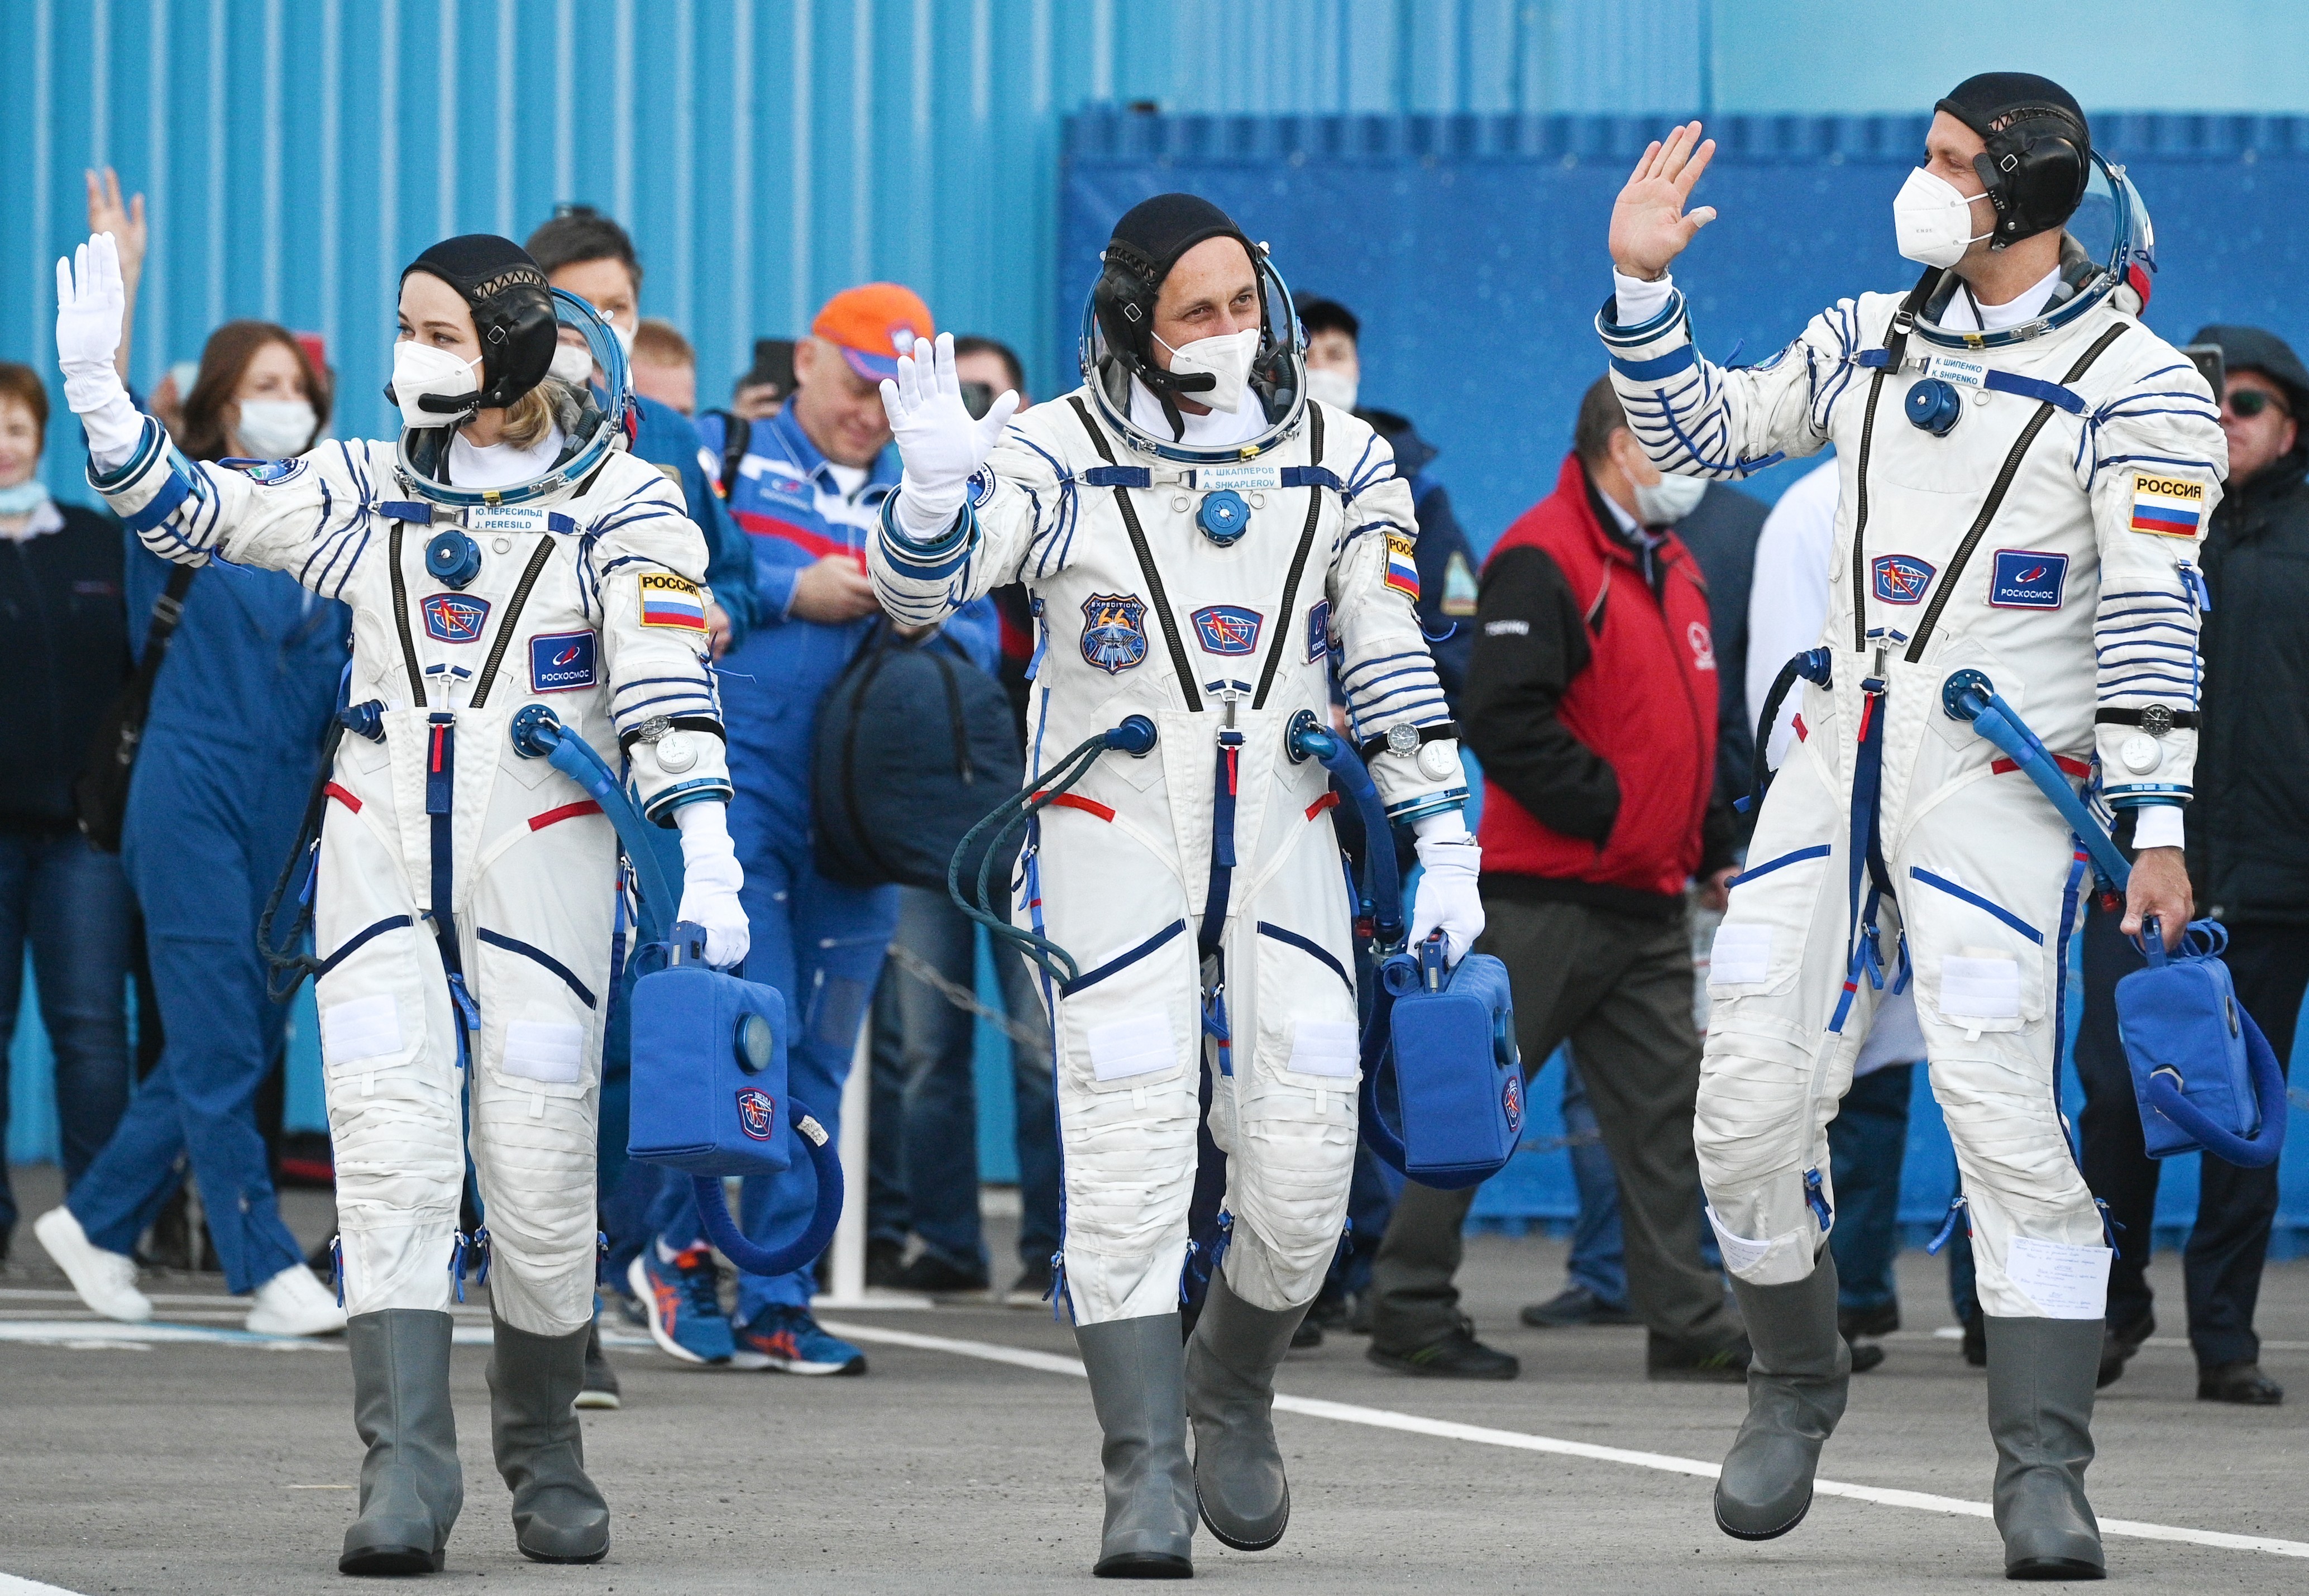 Космонавт совершивший самый длинный полет. Союз МС 19 Пересильд Шипенко.